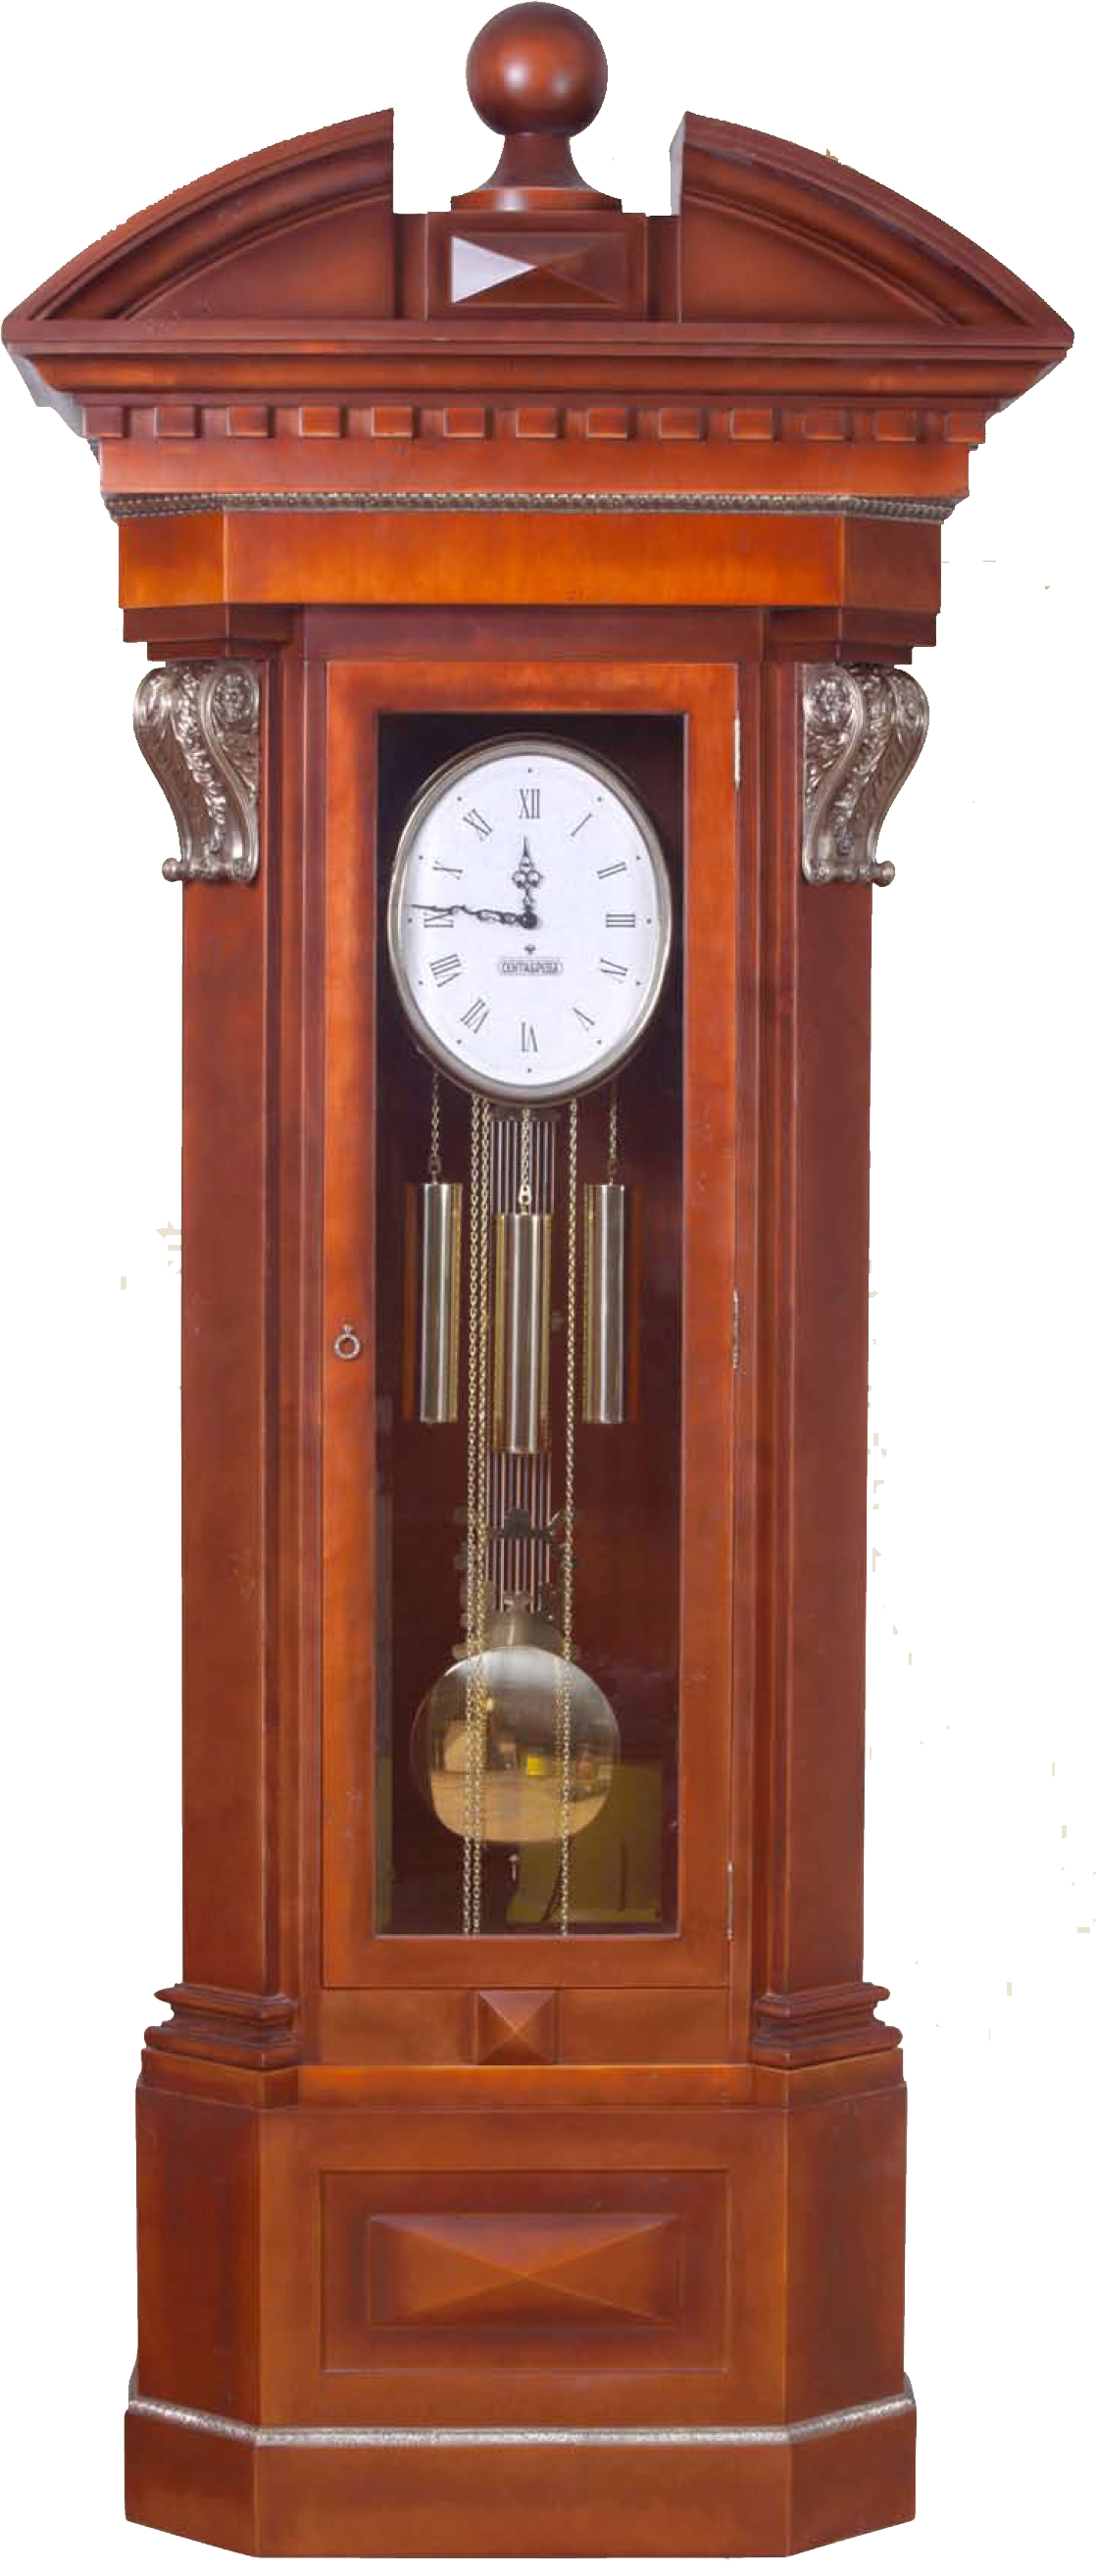 Reloj PNG